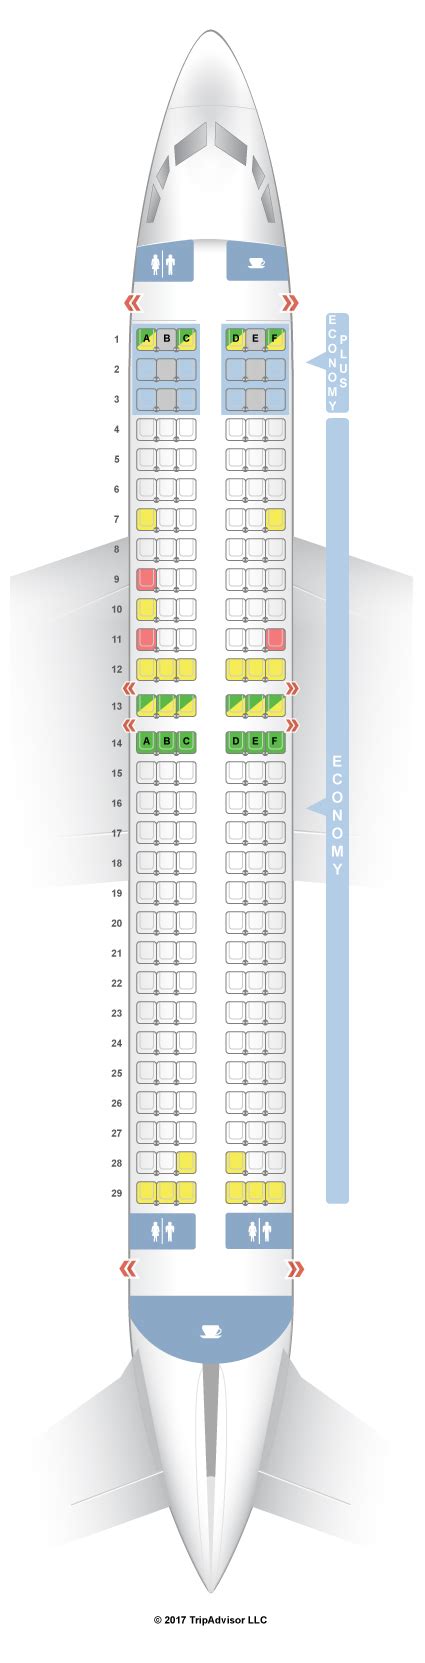 boeing 737-800 seating chart westjet